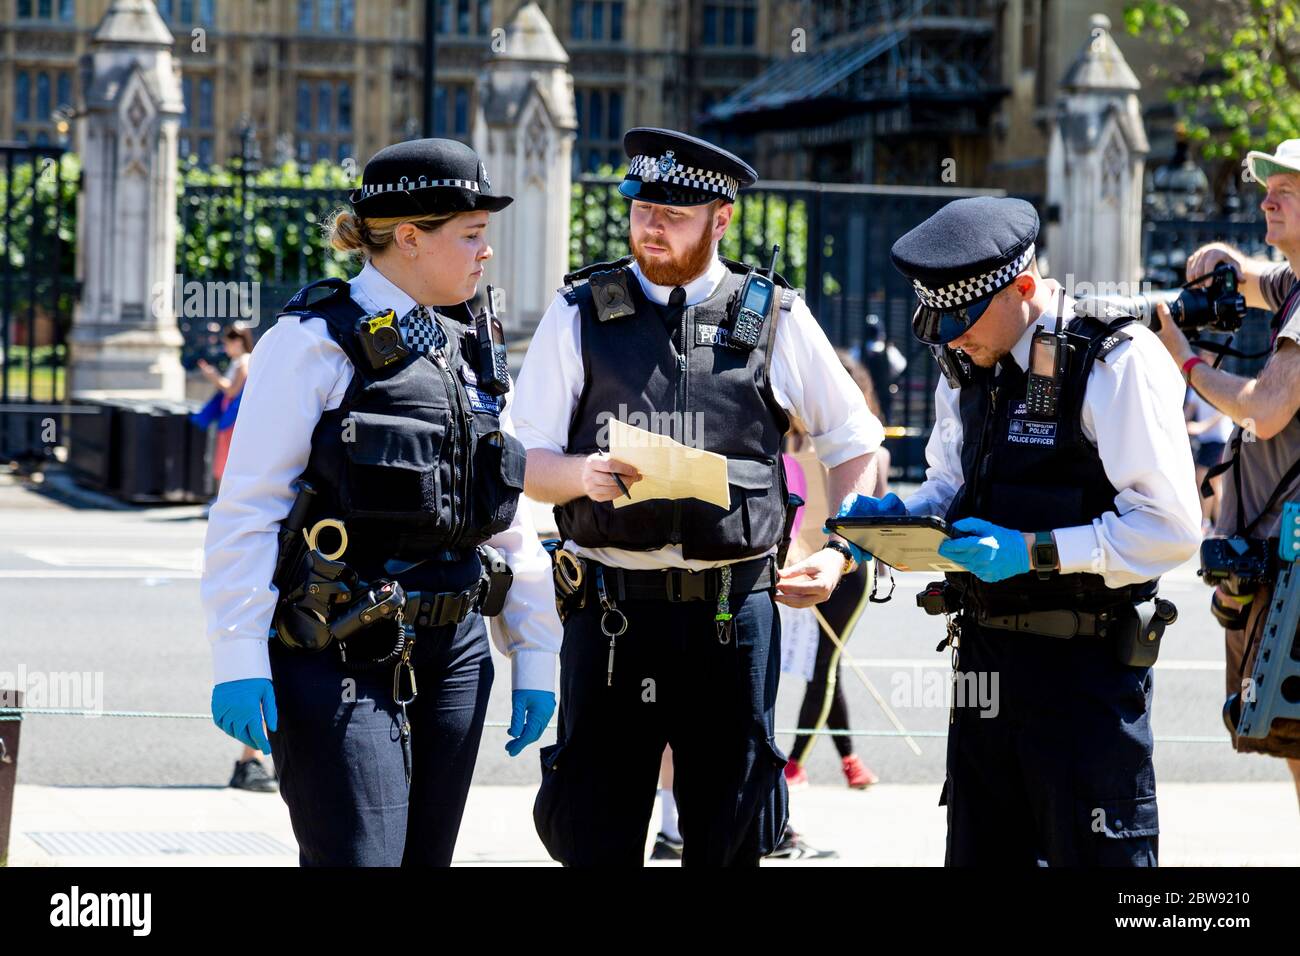 30 mai 2020 Londres, Royaume-Uni - extinction manifestation silencieuse de la rébellion contre le changement climatique à Westminster, des manifestants condamnés à des amendes et emmenés par la police pour avoir enfreint les règlements sur le coronavirus Banque D'Images